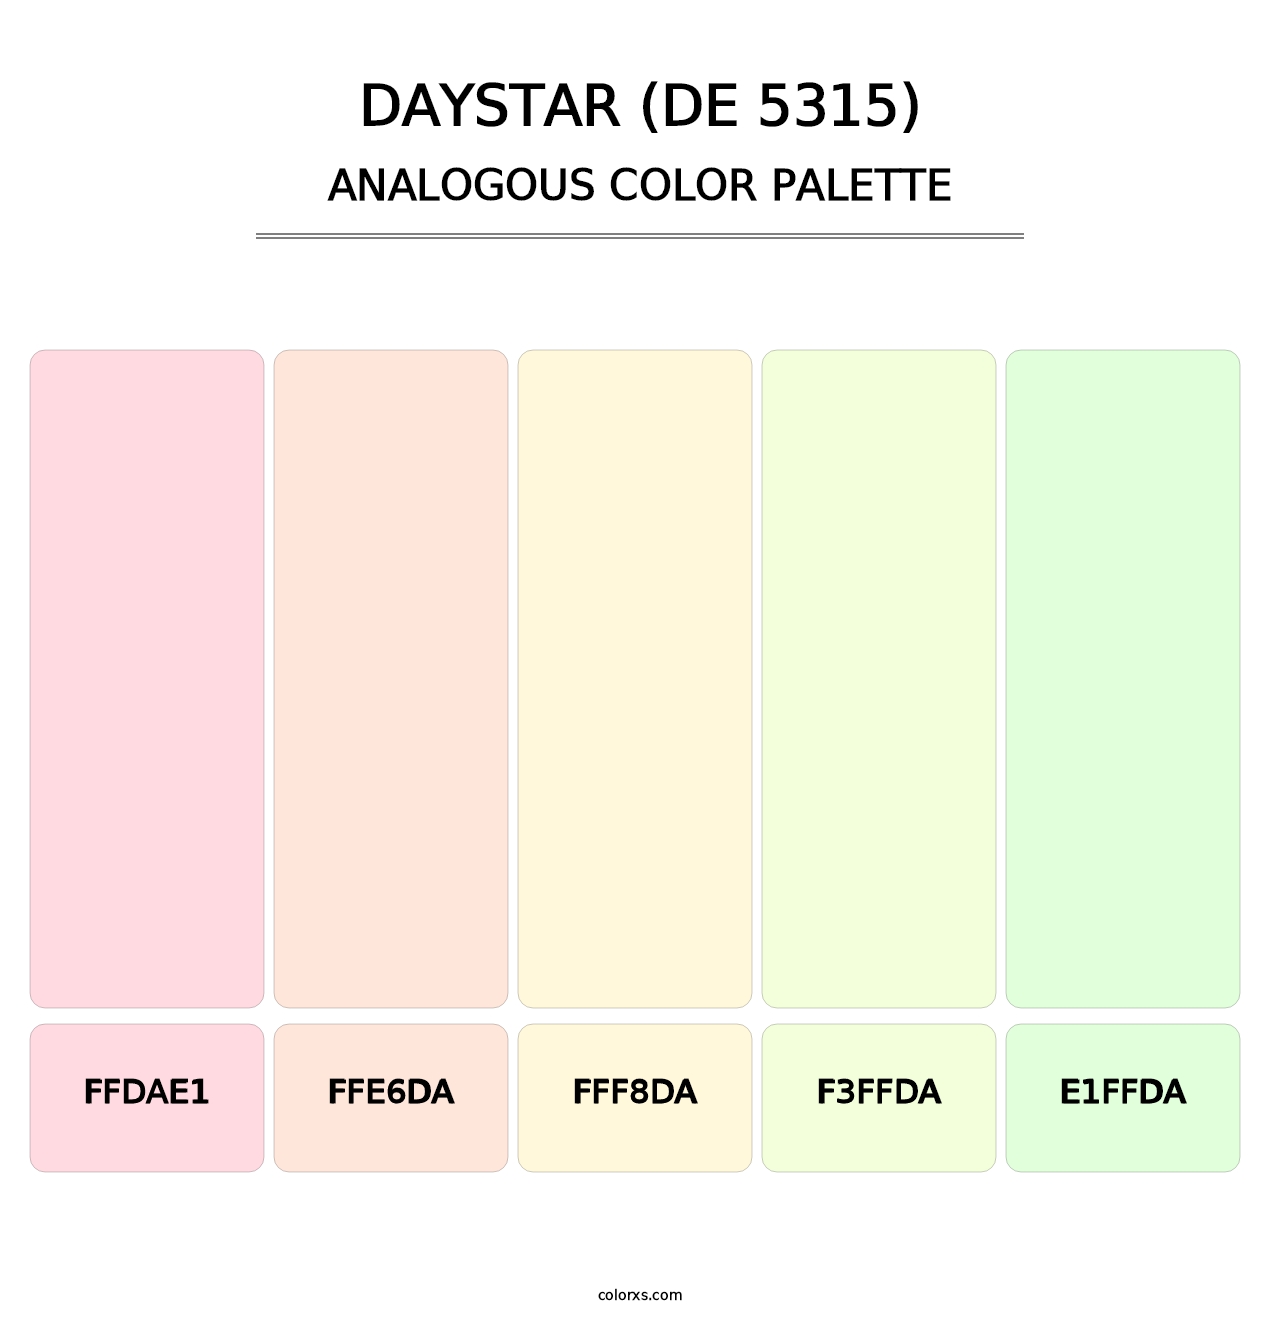 Daystar (DE 5315) - Analogous Color Palette